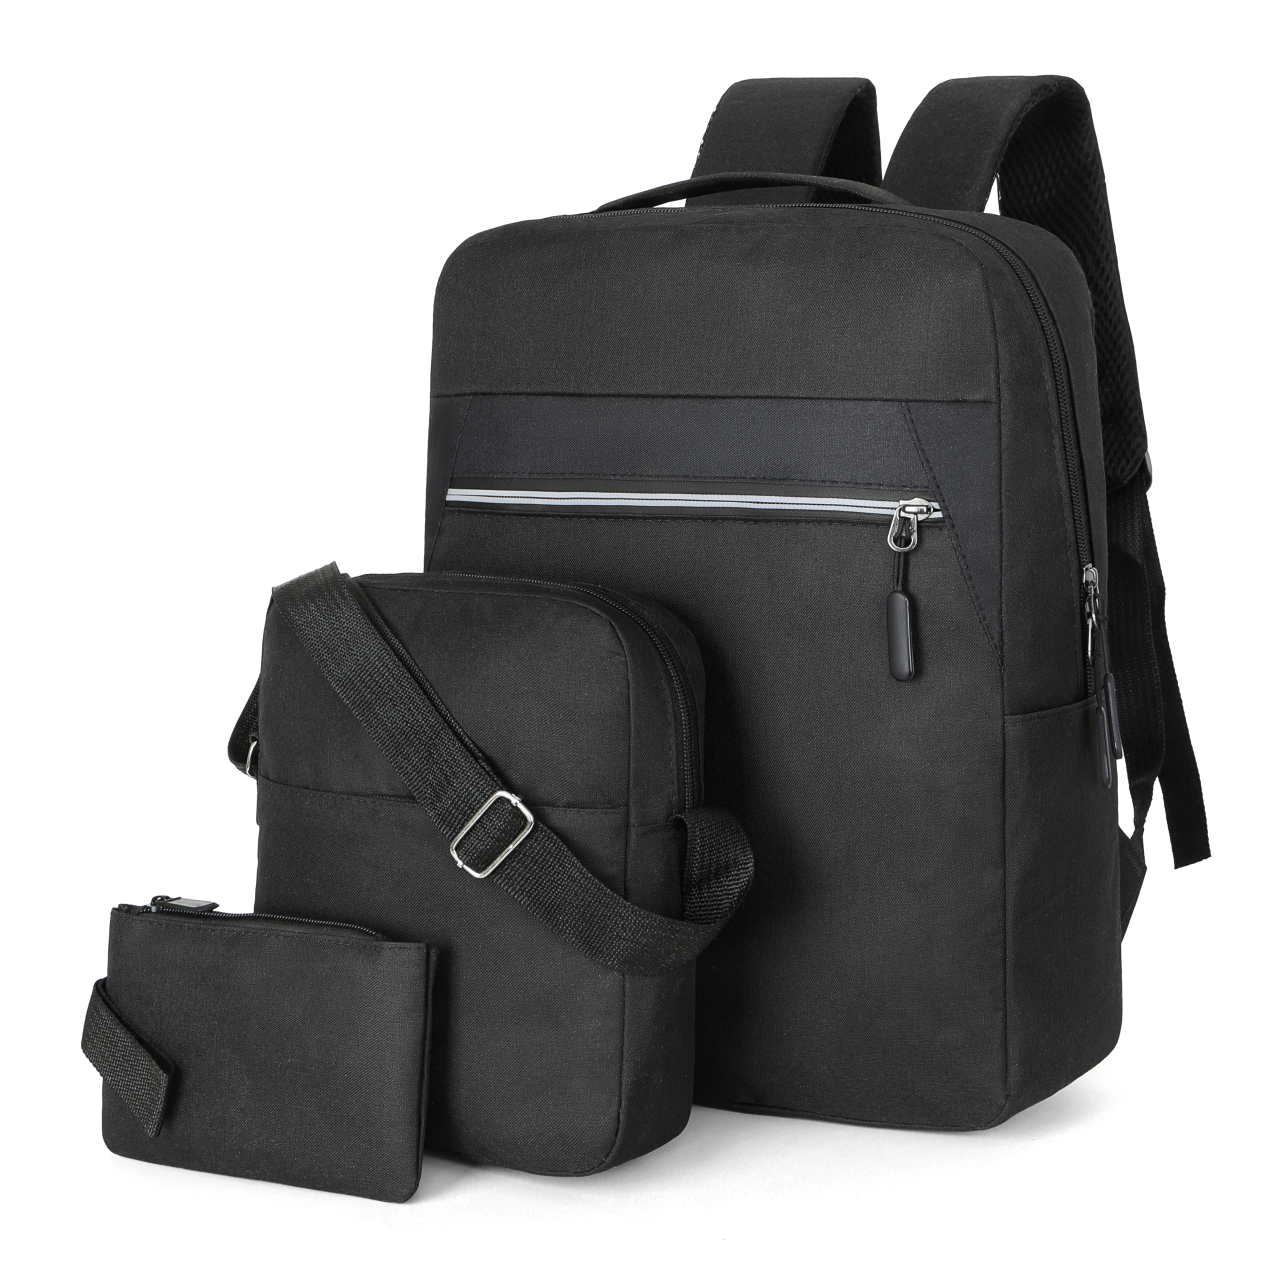 Wholesale Priced School Bags Kids' Suitcase Backpacks